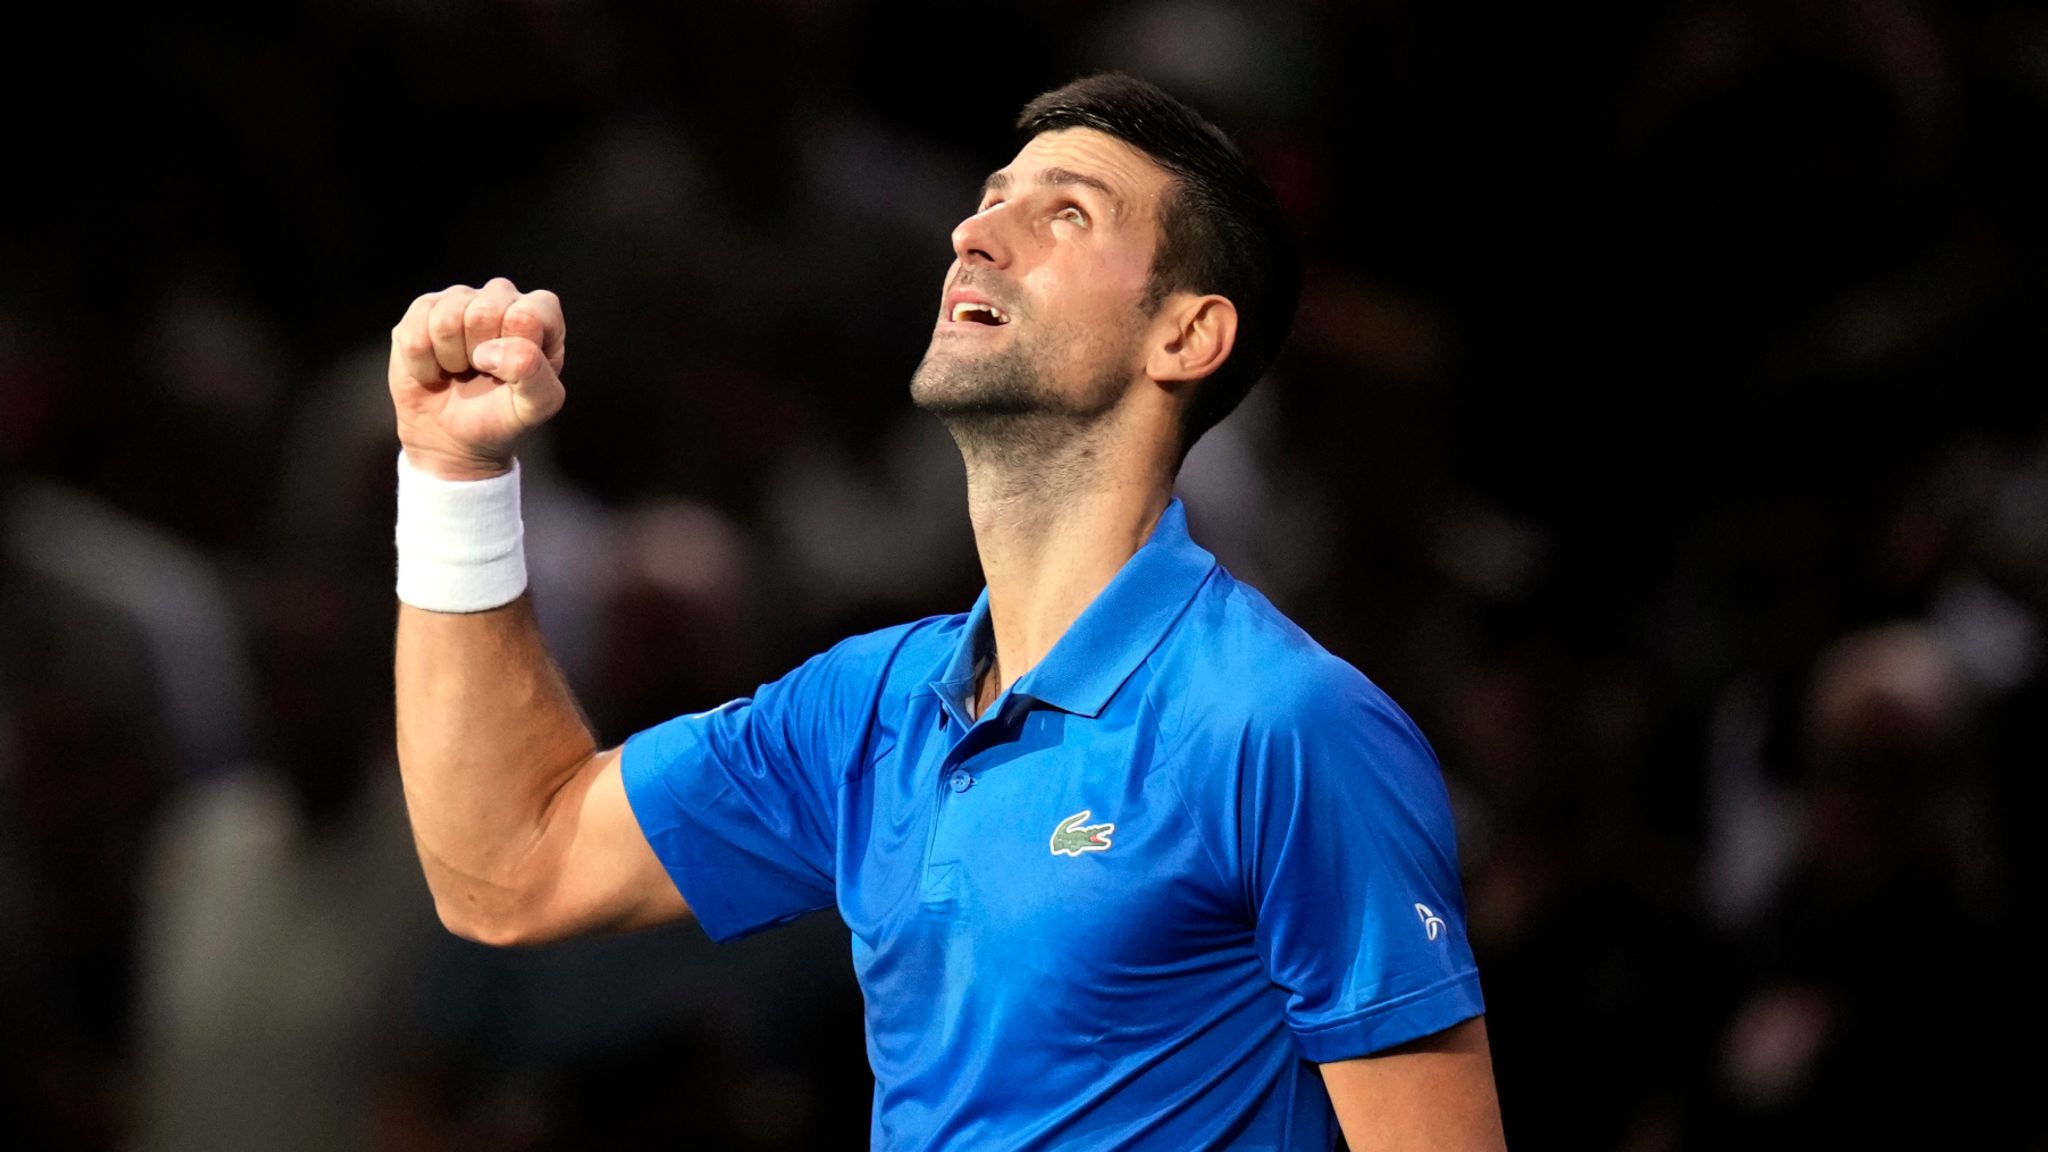 Paris Masters Novak Djokovic on course for seventh title I No 1 Carlos Alcaraz breezes through Tennis News Sky Sports